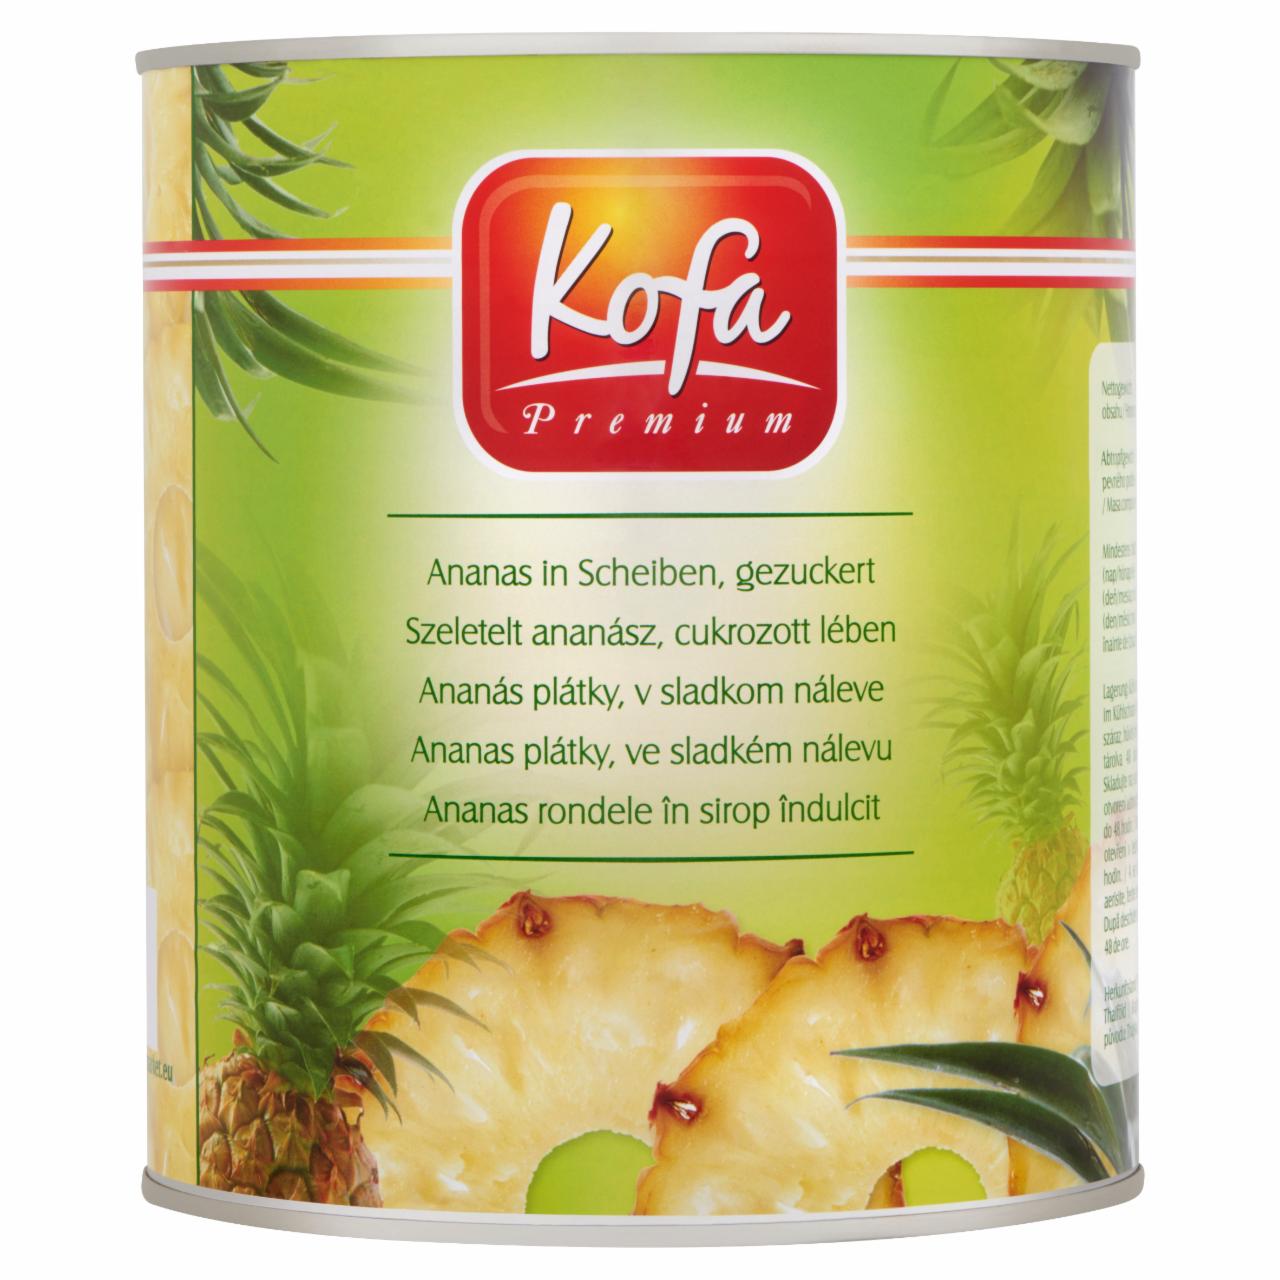 Képek - Kofa Premium szeletelt ananász cukrozott lében 3050 g